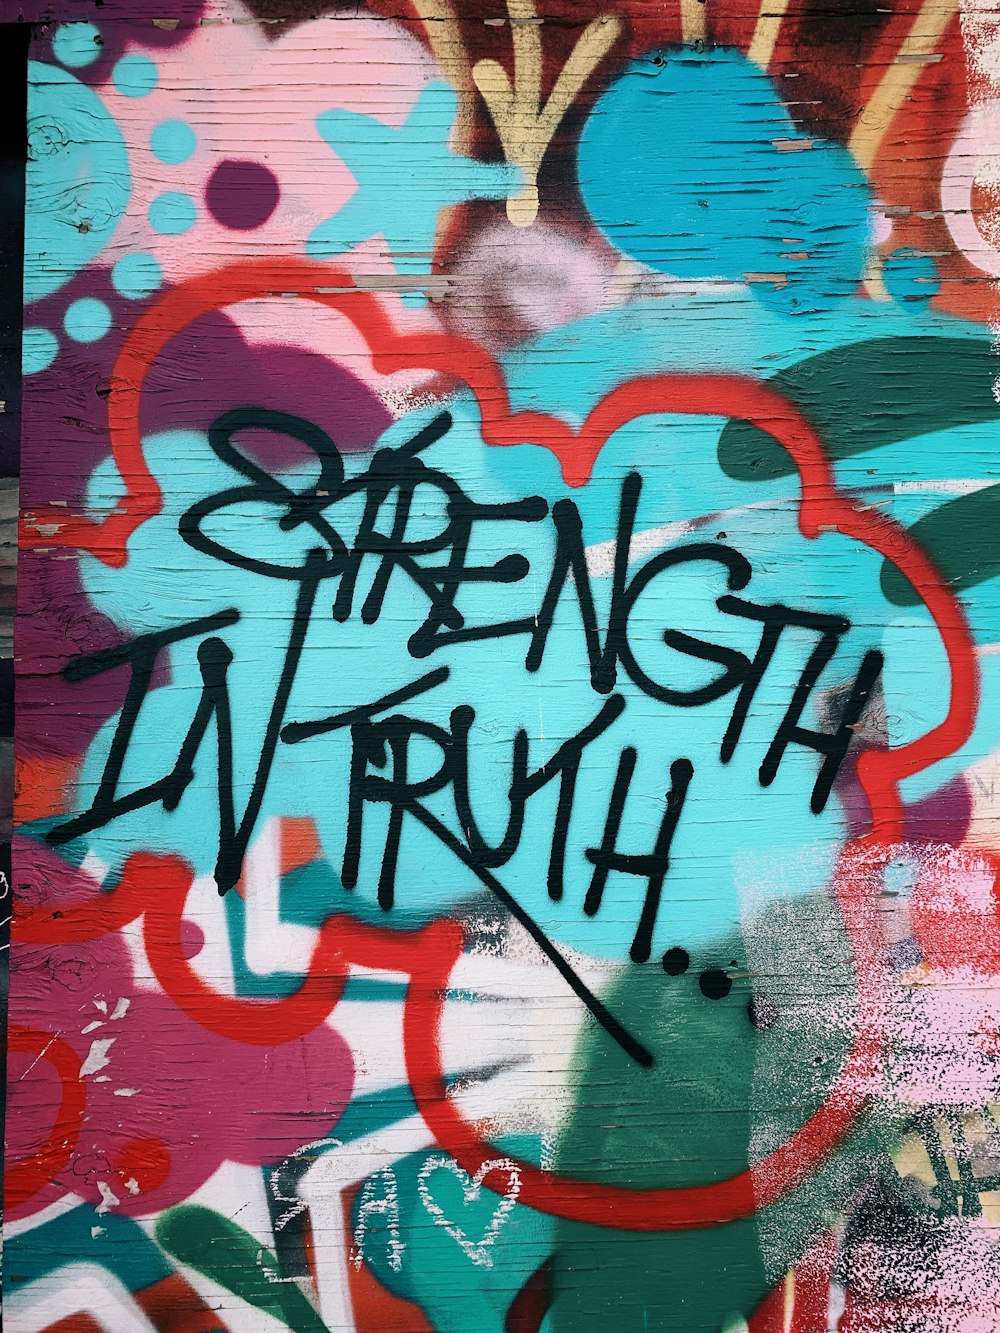 Strength In Truth graffiti